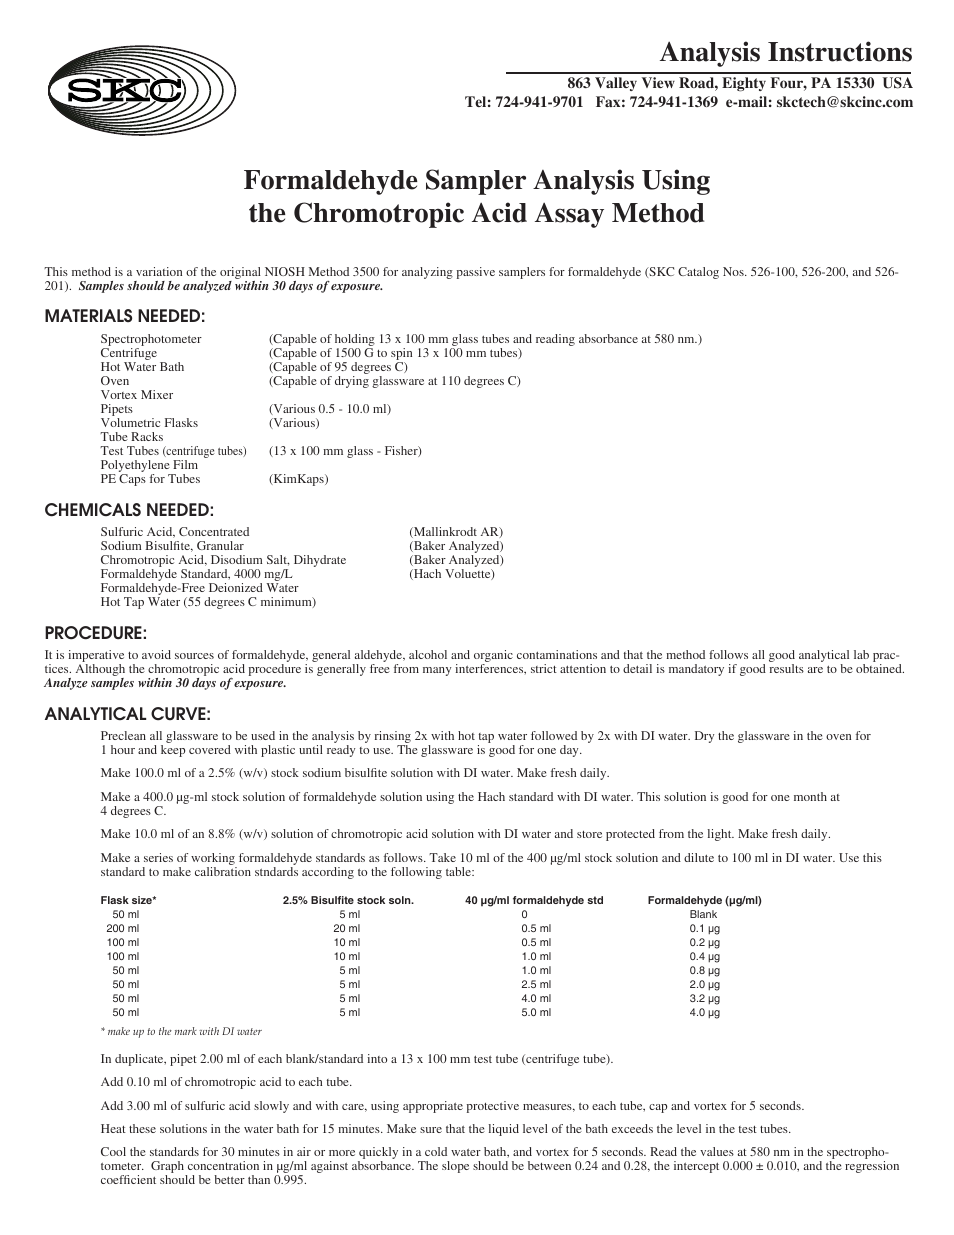 526-200_201 Analysis Instructions Using the Chromotropic Acid Assay Method